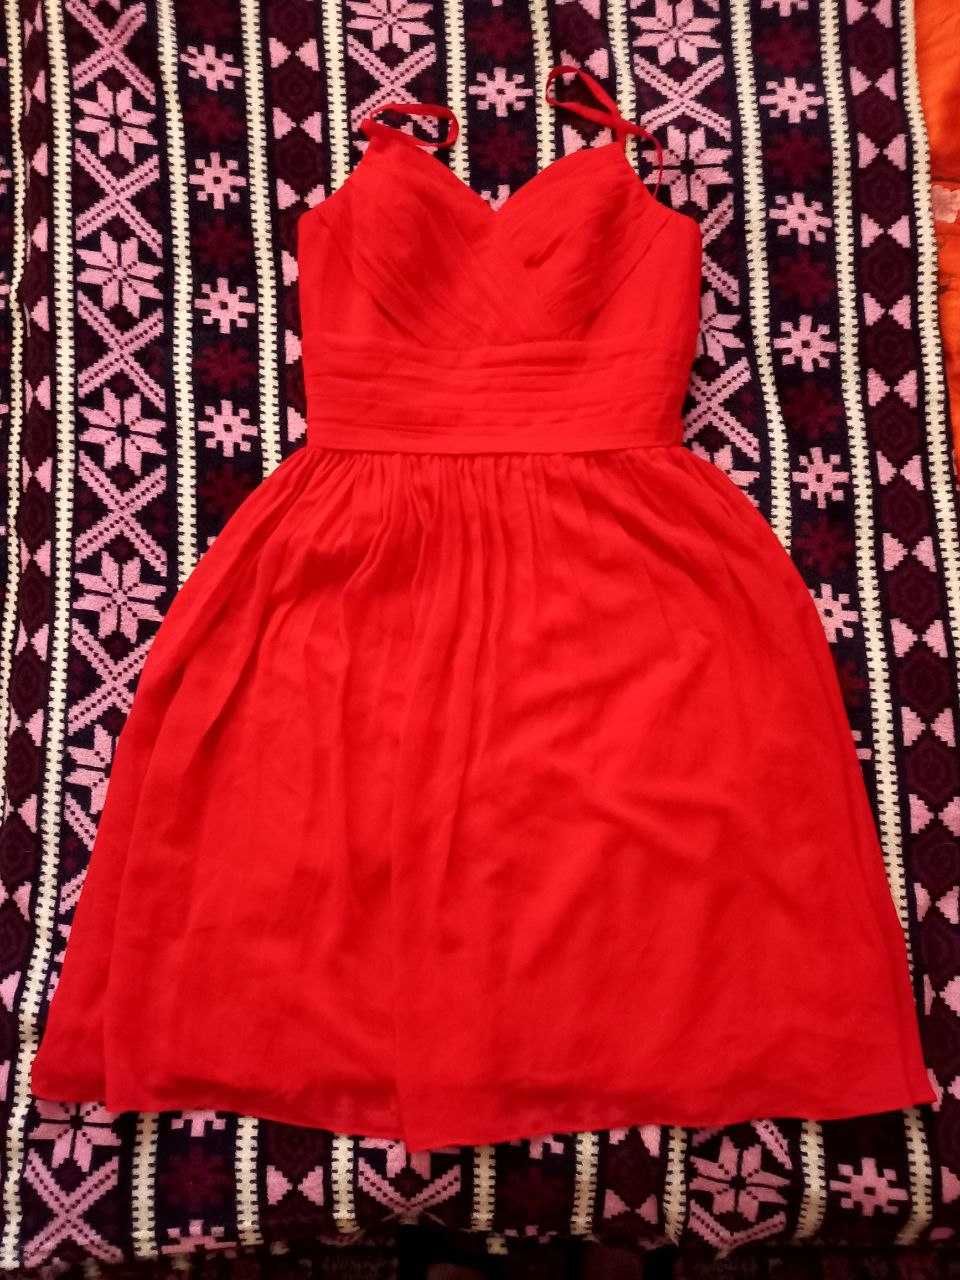 Випускна, вечірня ошатна червона сукня розмір S  - M